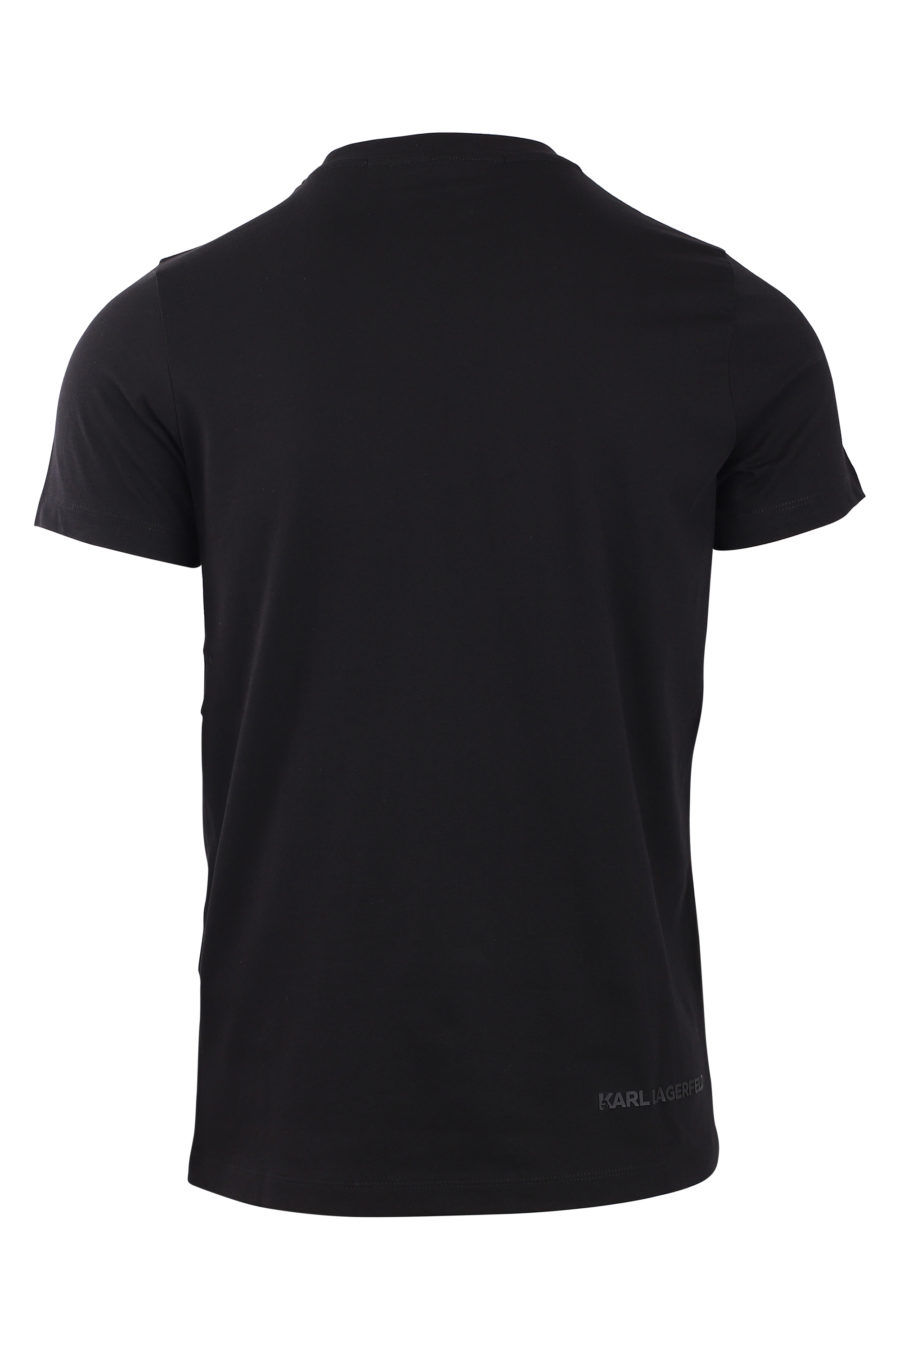 Camiseta negra con maxi logo fucsia - IMG 0808